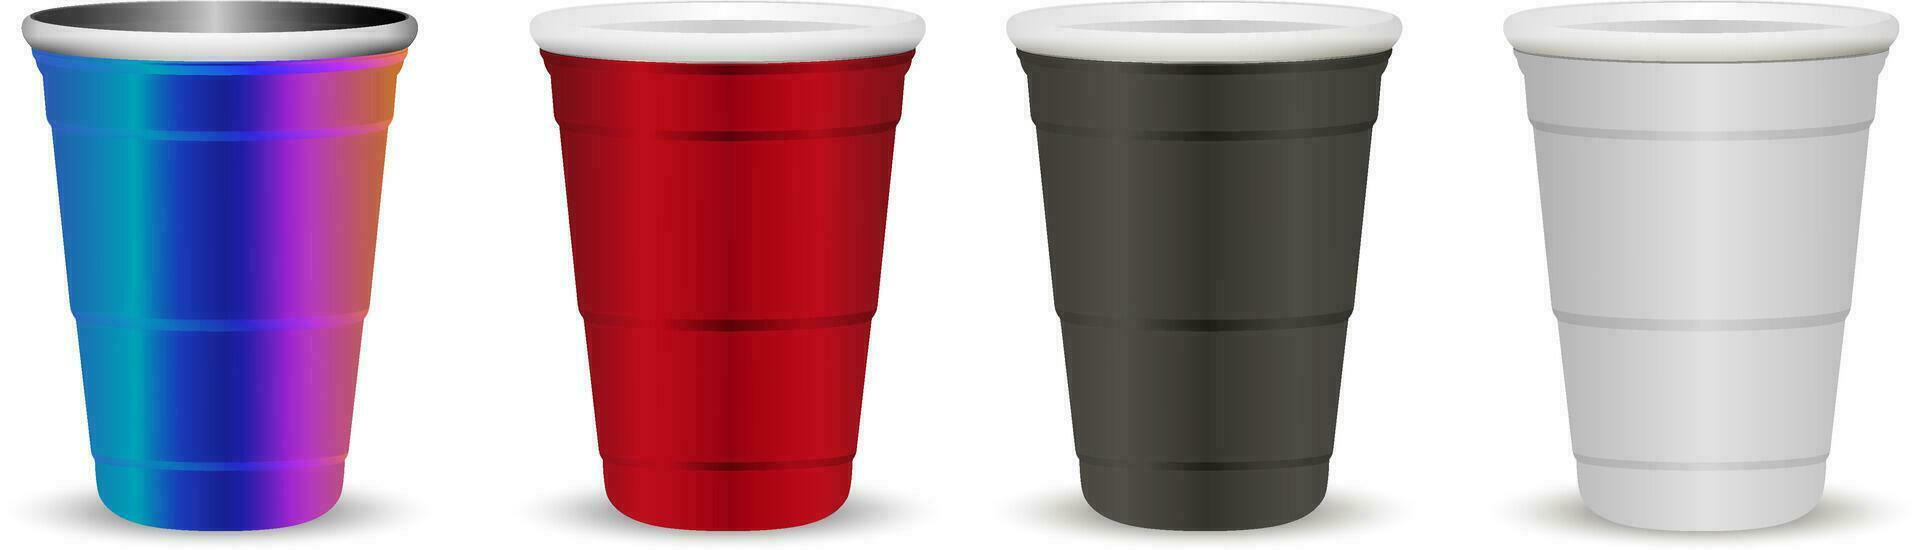 partij cups bespotten omhoog reeks realistisch 3d vector illustratie. beschikbaar papier, plastic en metalen cups voor drankjes en spellen, viering.